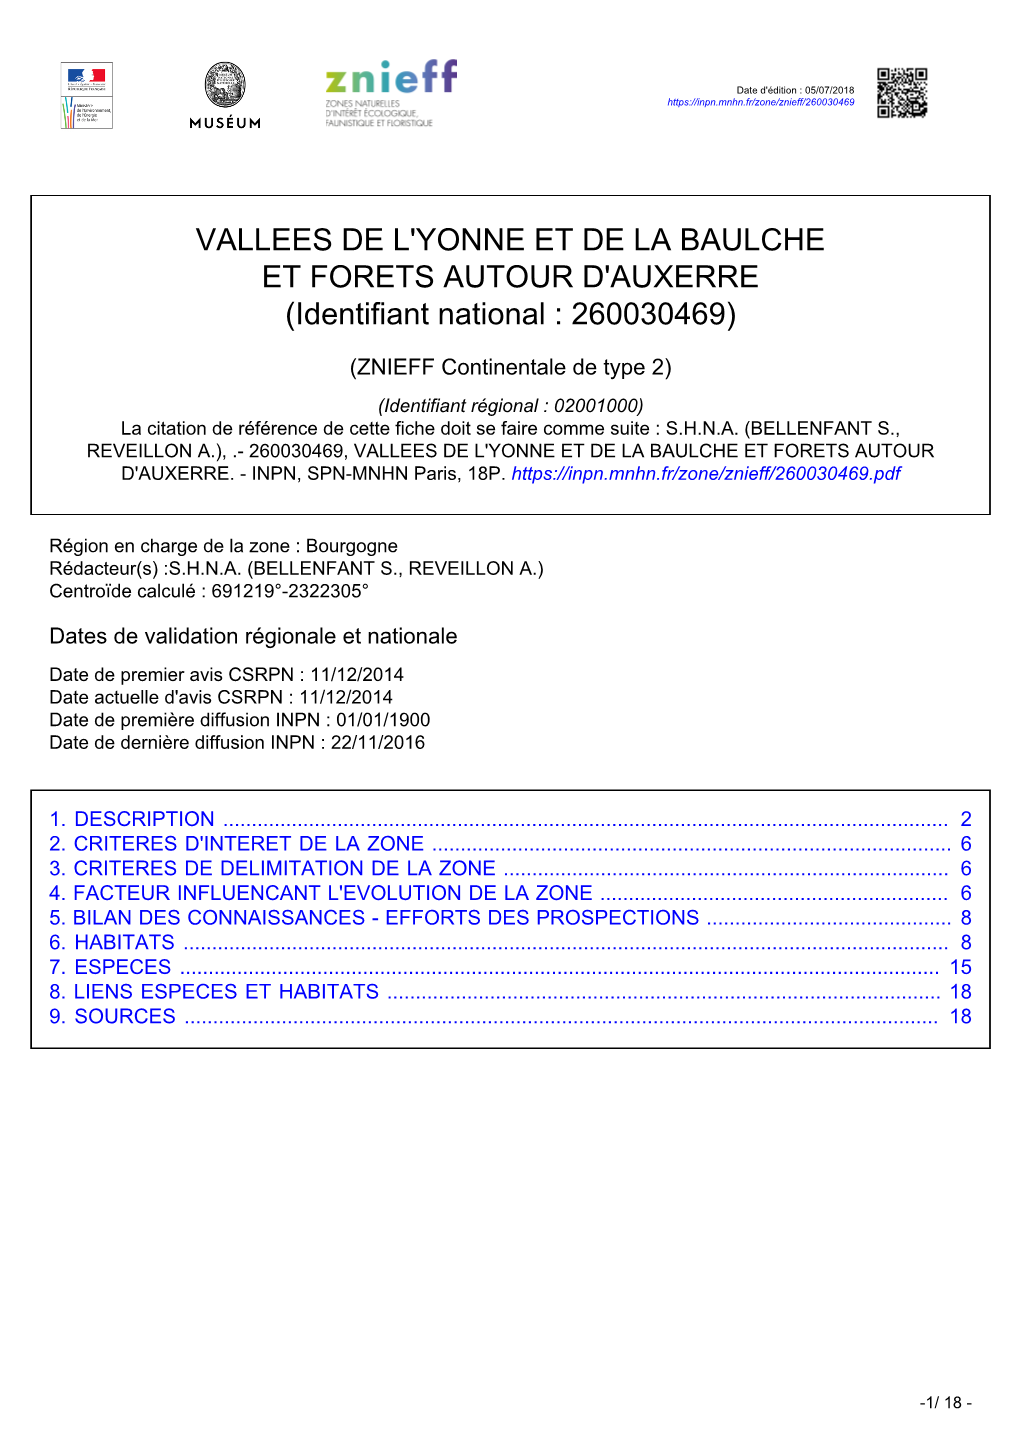 VALLEES DE L'yonne ET DE LA BAULCHE ET FORETS AUTOUR D'auxerre (Identifiant National : 260030469)